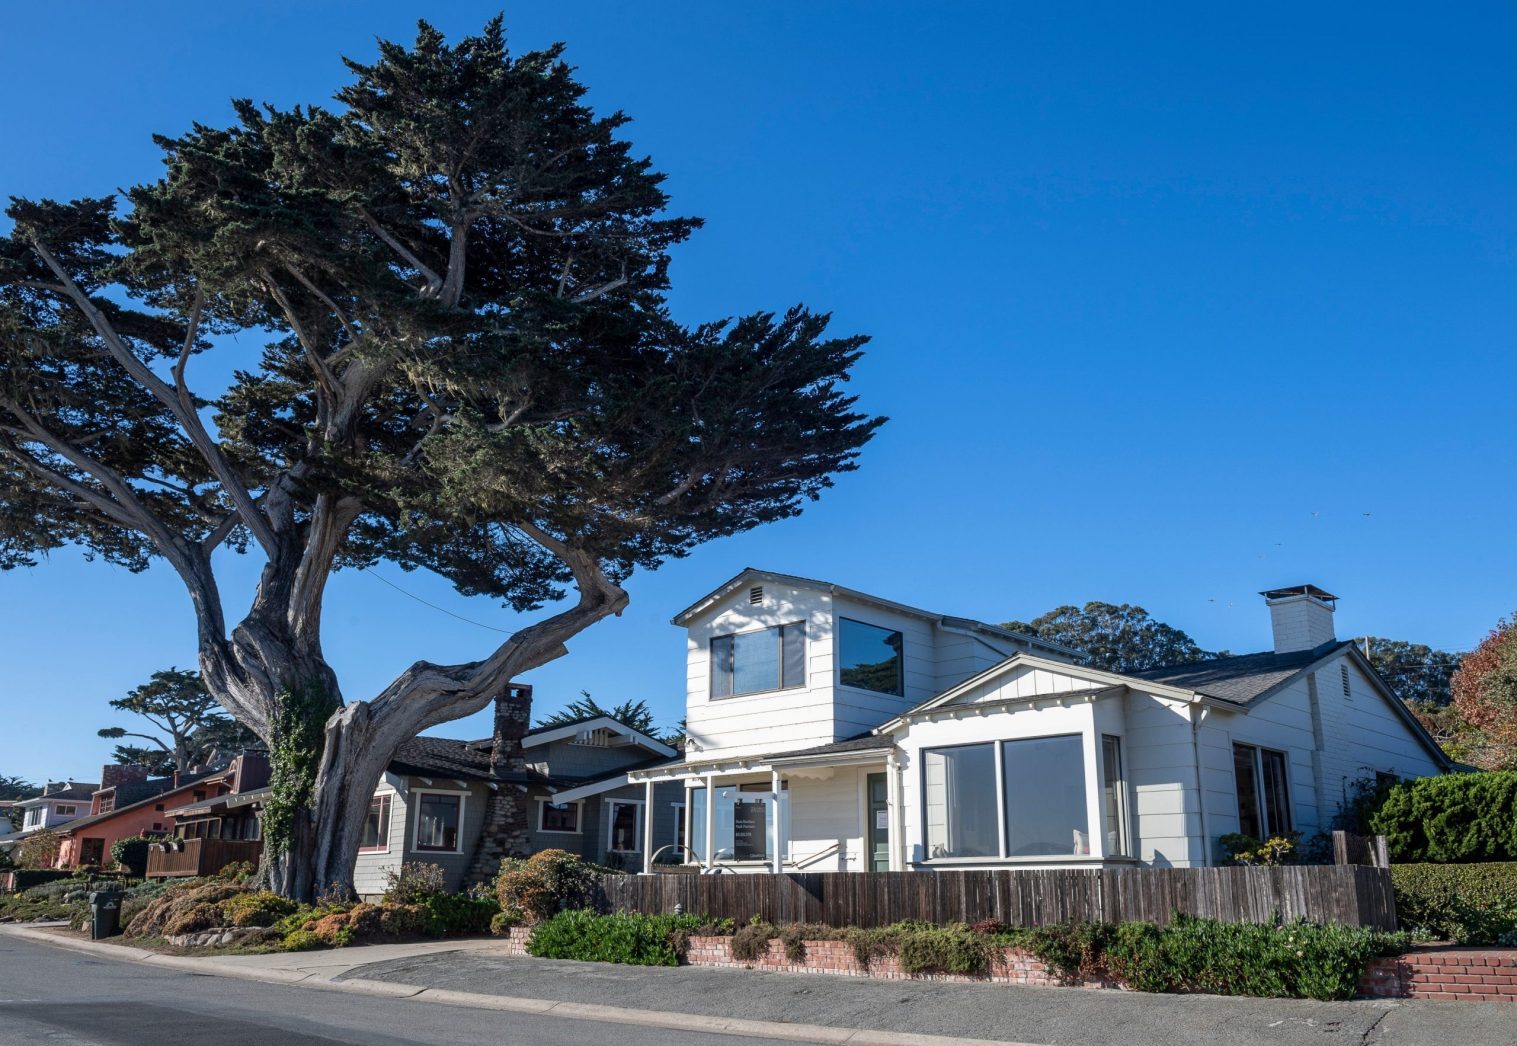 Bay Area home prices near record $1 million amid Covid crisis